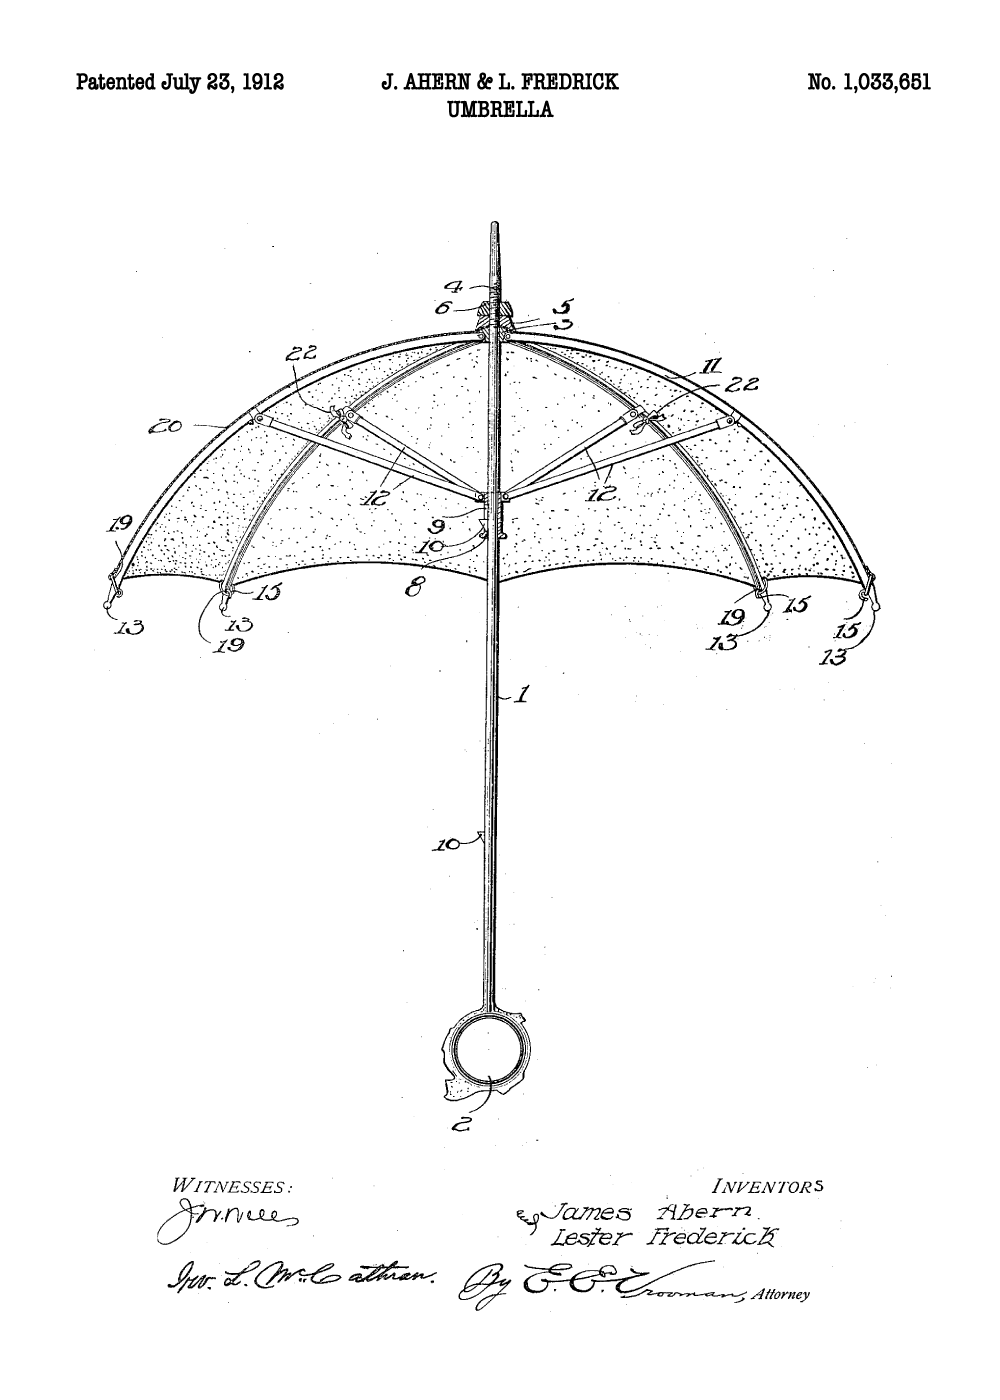 skyskraber tilstrækkelig depositum Paraply plakat - Original patent tegning | Gave til elektrikeren